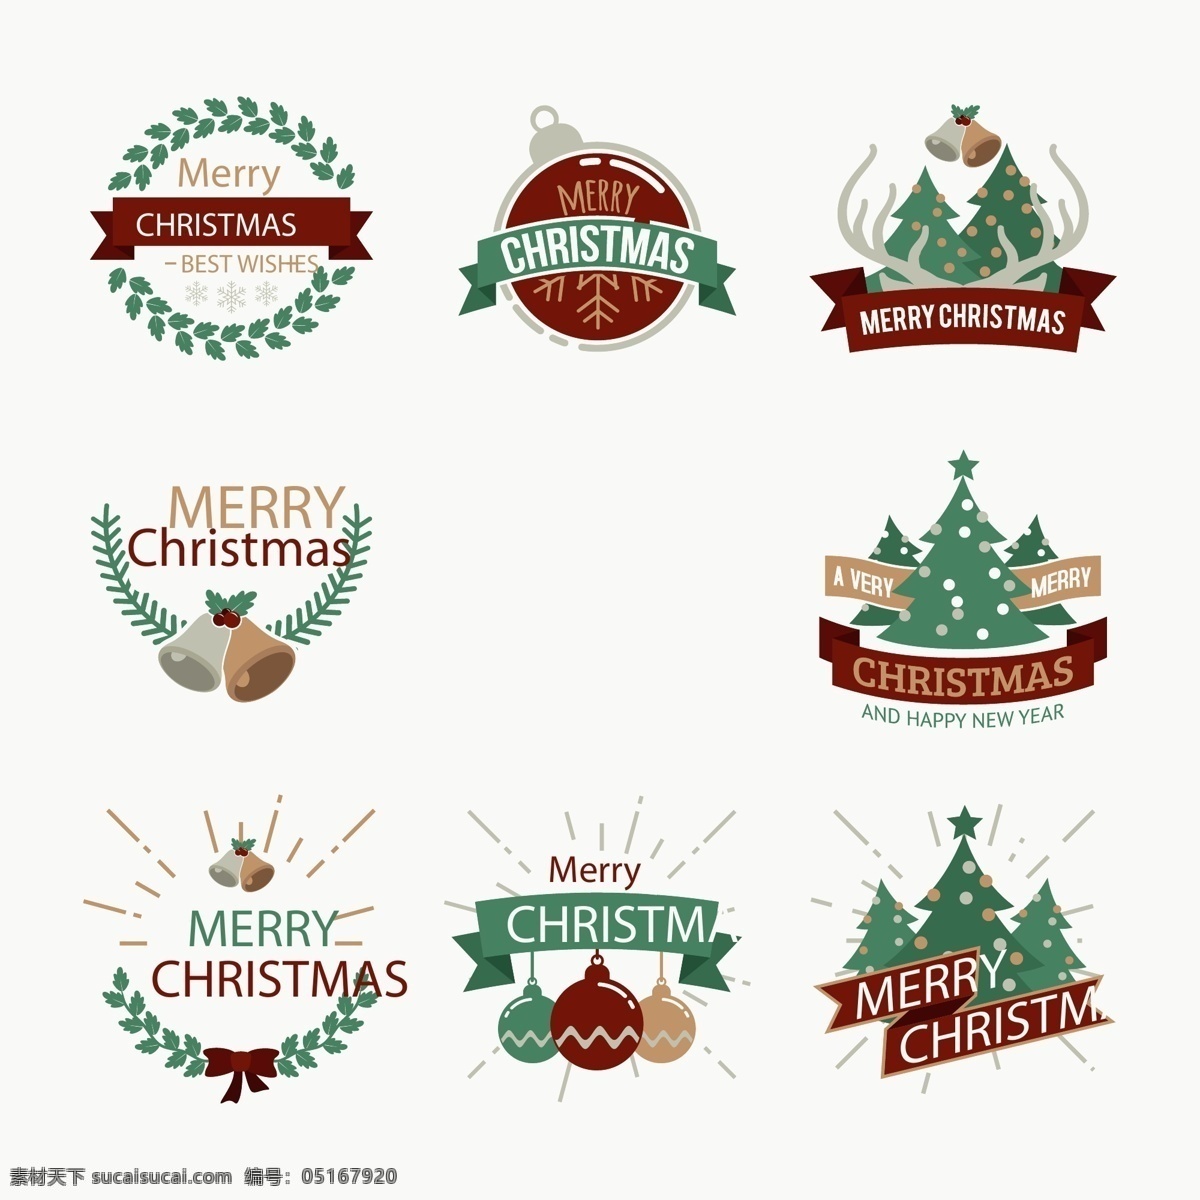 复古 颜色 圣诞 标签 英文 圣诞树 圣诞节 矢量素材 铃铛 装饰品 ai素材